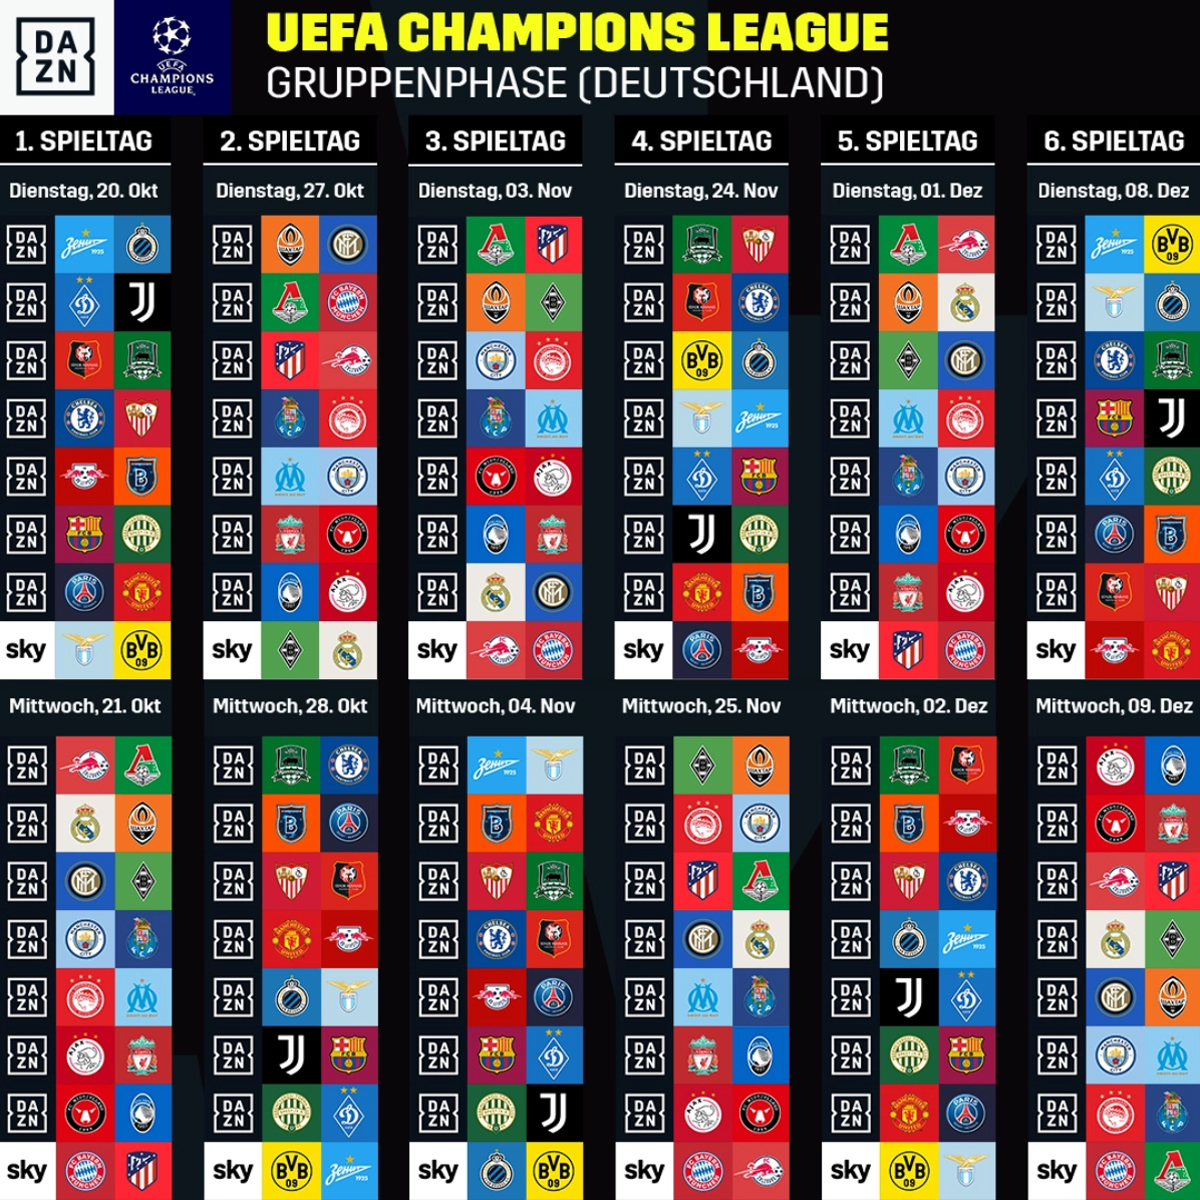 Die Aufteilung der Champions-League-Gruppenspiele zwischen DAZN und Sky.